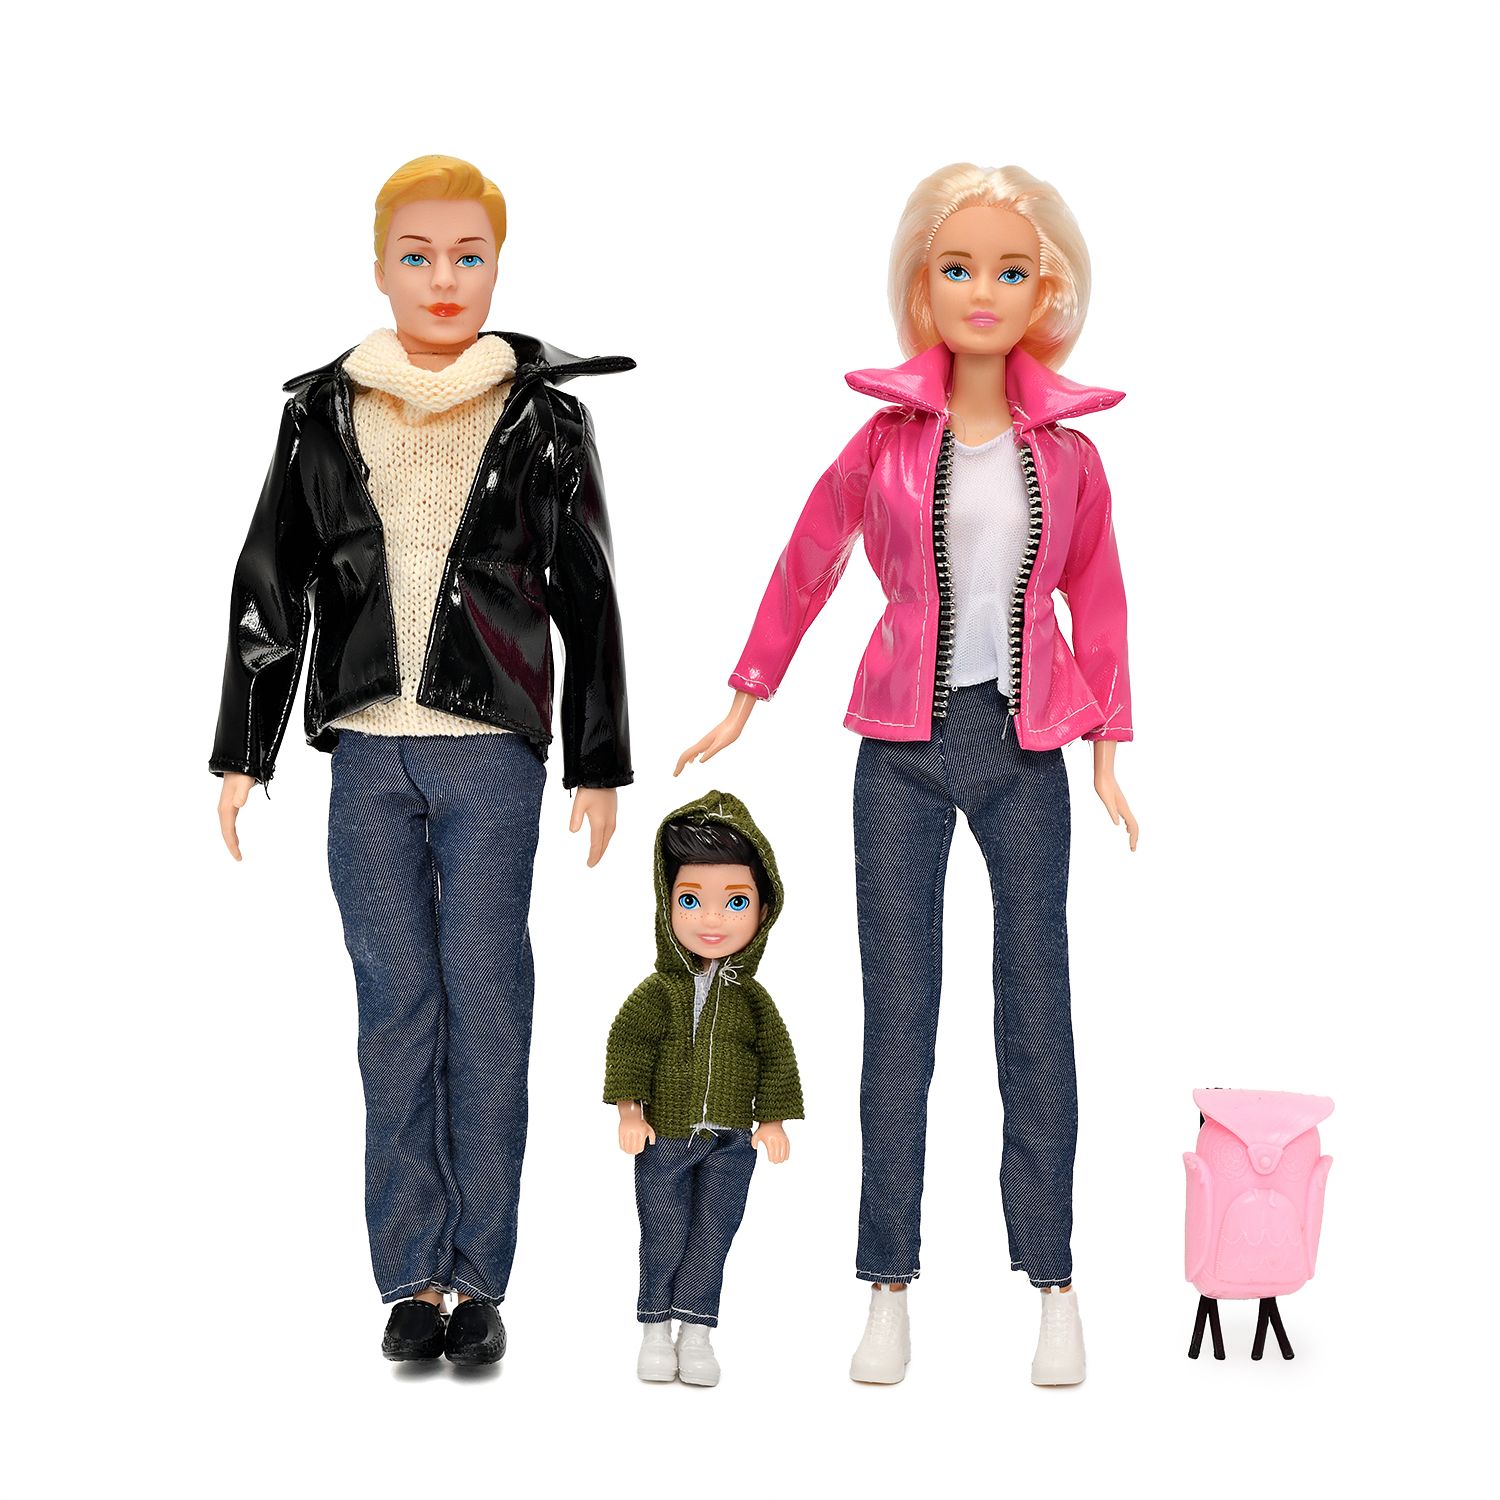 Набор из 3х кукол S-S Семья на прогулке одежда и аксессуары в комплекте игры на прогулке круглый год